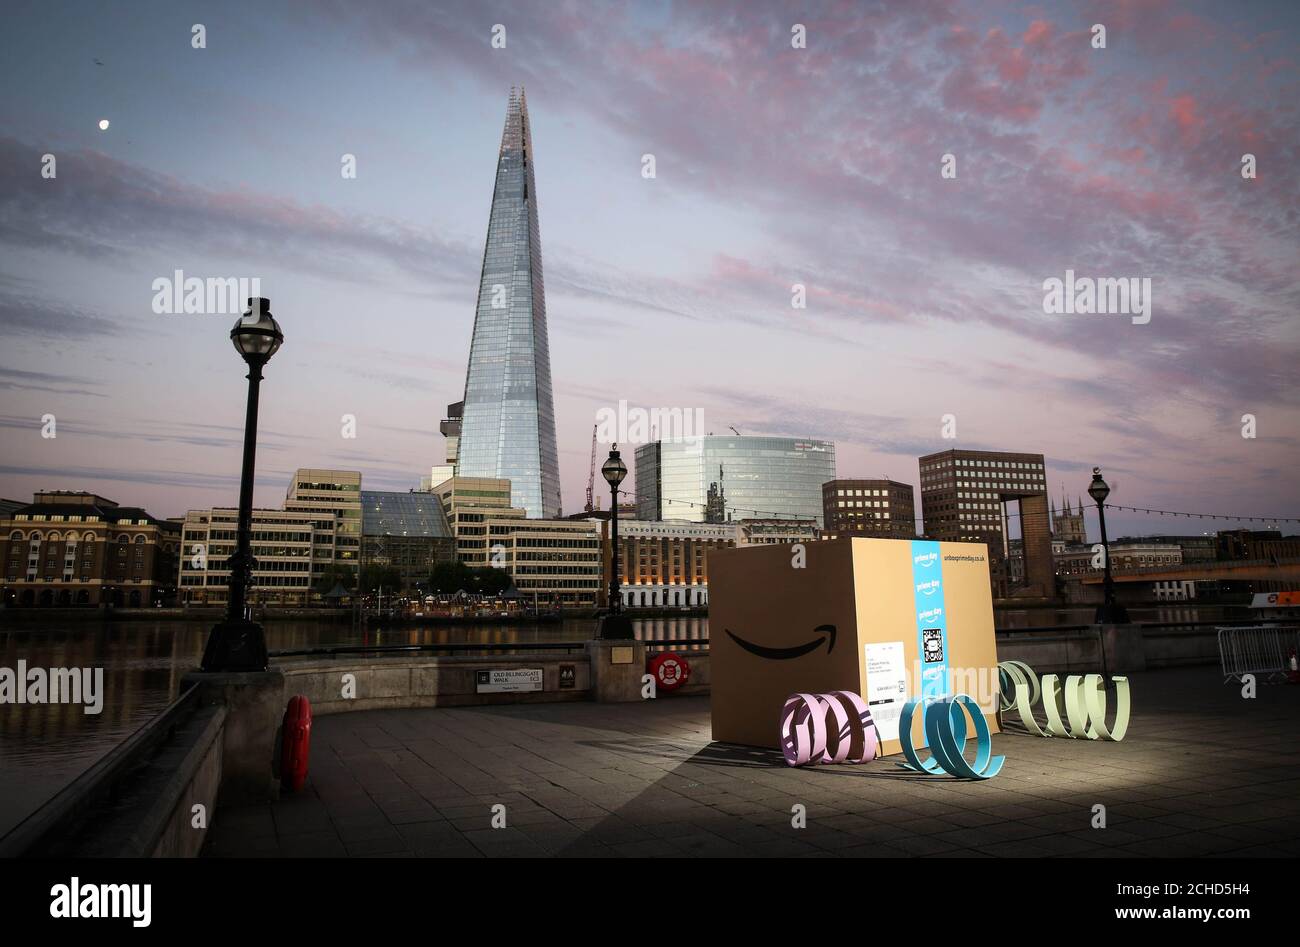 Une boîte de livraison de 10 m x 10 m arrive à Londres pour annoncer le lancement d'Amazon Prime Day, qui offre 36 heures de remises et de promotions à partir de midi le lundi 16 juillet. Banque D'Images